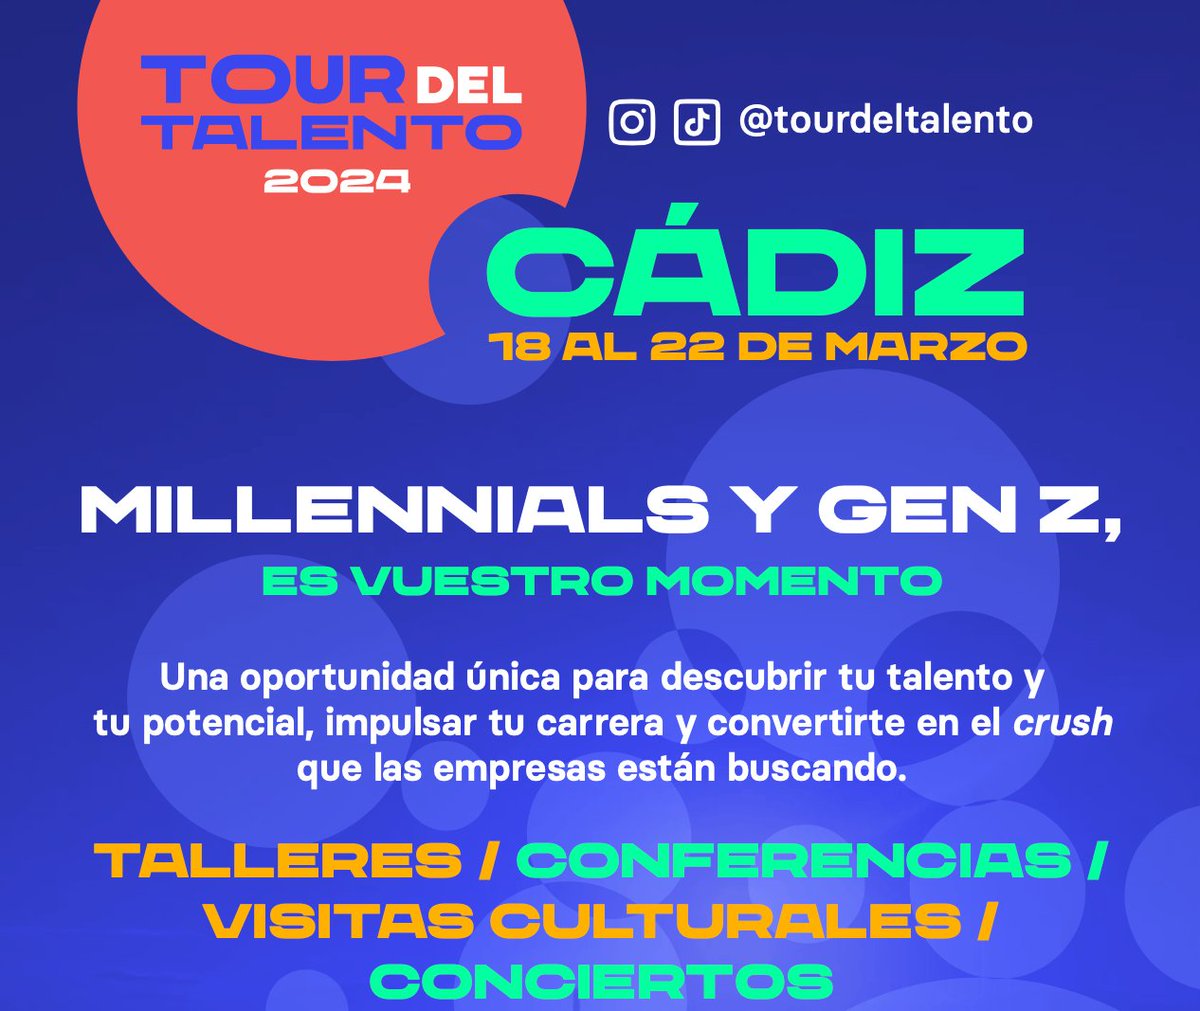 🎉🌟 El Tour del Talento llega a la ciudad de Cádiz, ¡y estamos listos para vivir una experiencia inolvidable! 💼 Descubre nuevas oportunidades, y ¡empieza a brillar! 💫✨ @univcadiz @Cadiz_es   💙💛 Regístrate ahora y ¡no te lo pierdas! ➡️ t.ly/RqNWb